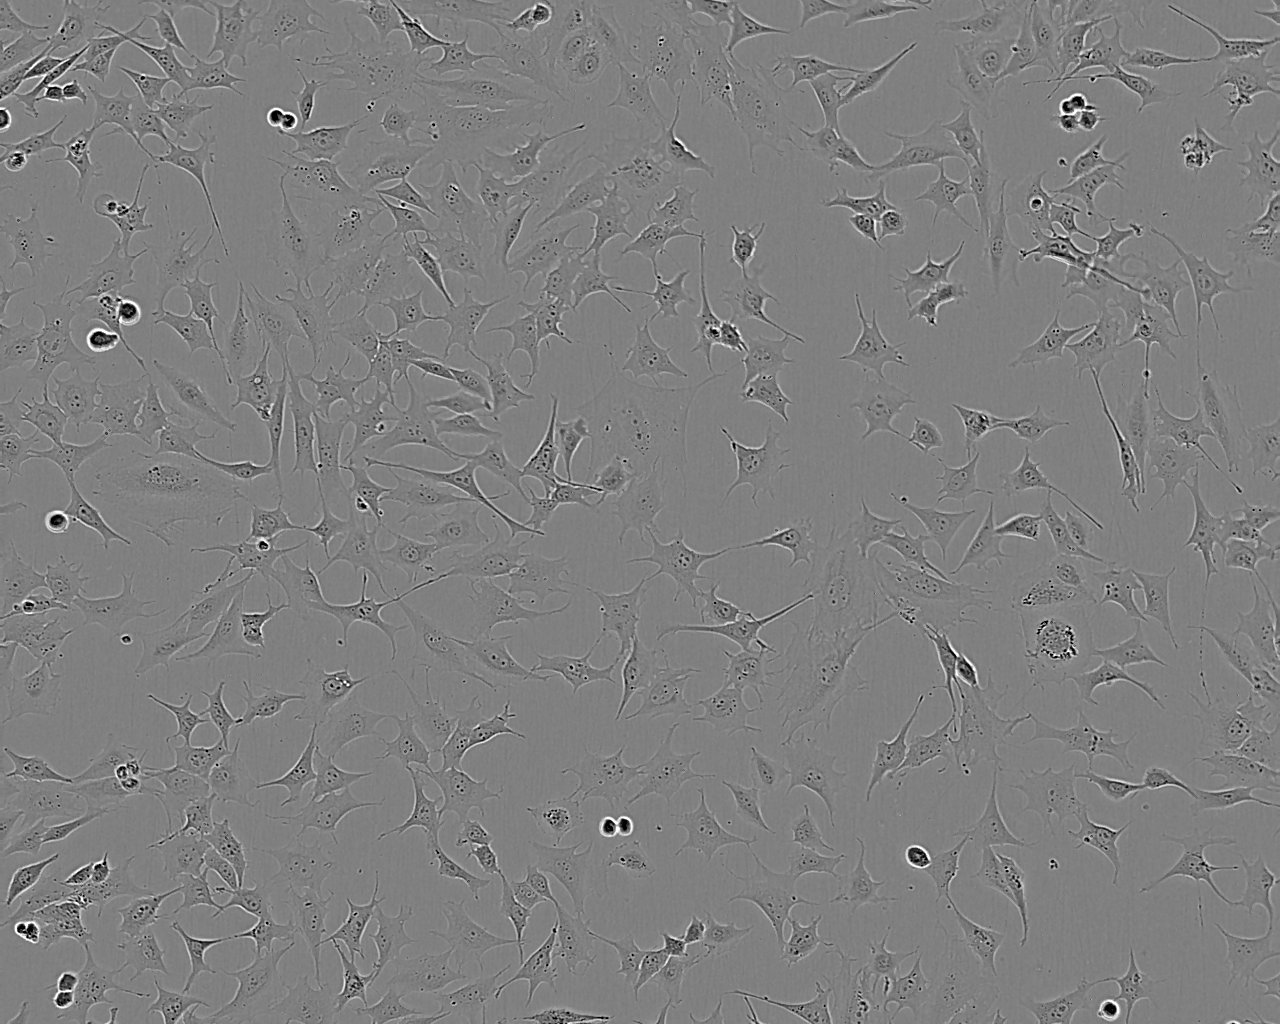 EC-GI-10 人食管鳞状细胞癌细胞系